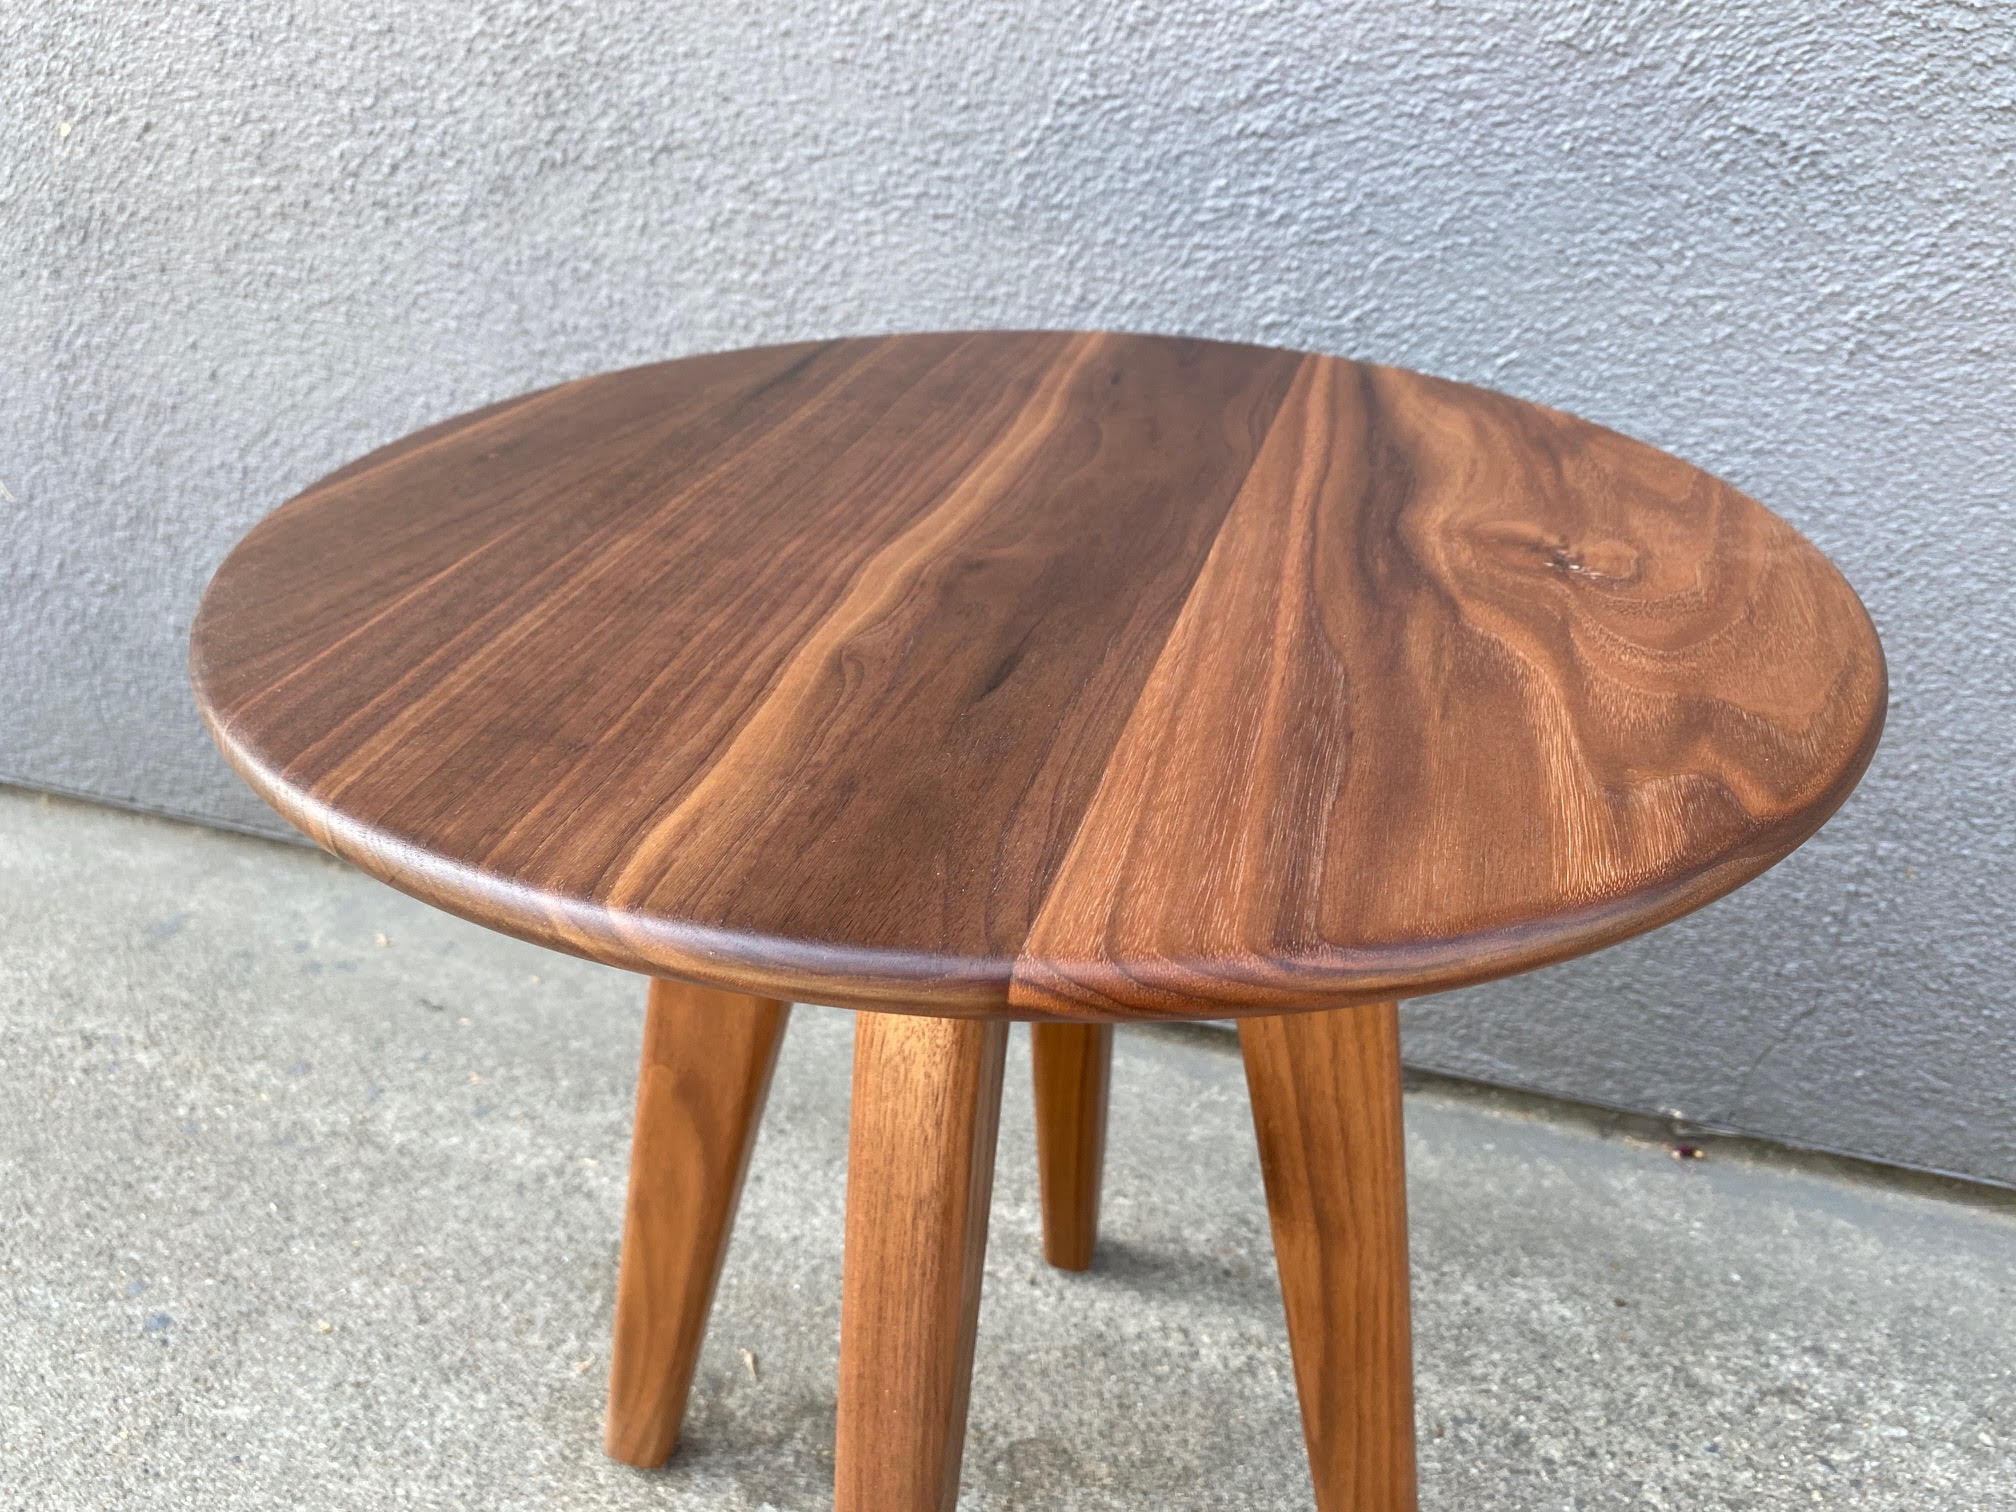 Custom "Tyler" Side Table